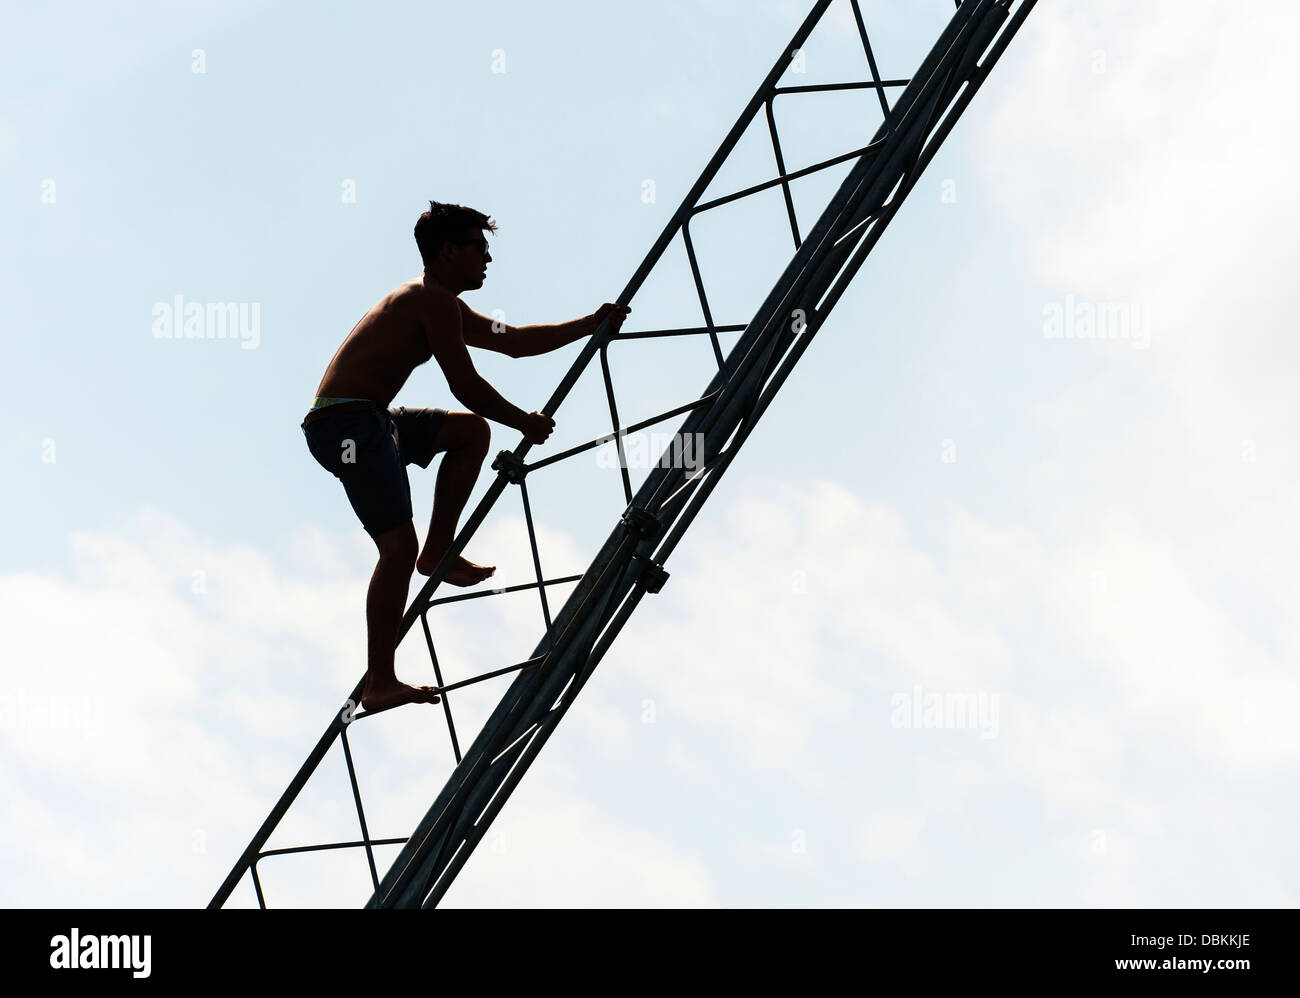 La silhouette di un uomo salendo su un pilone. Foto Stock